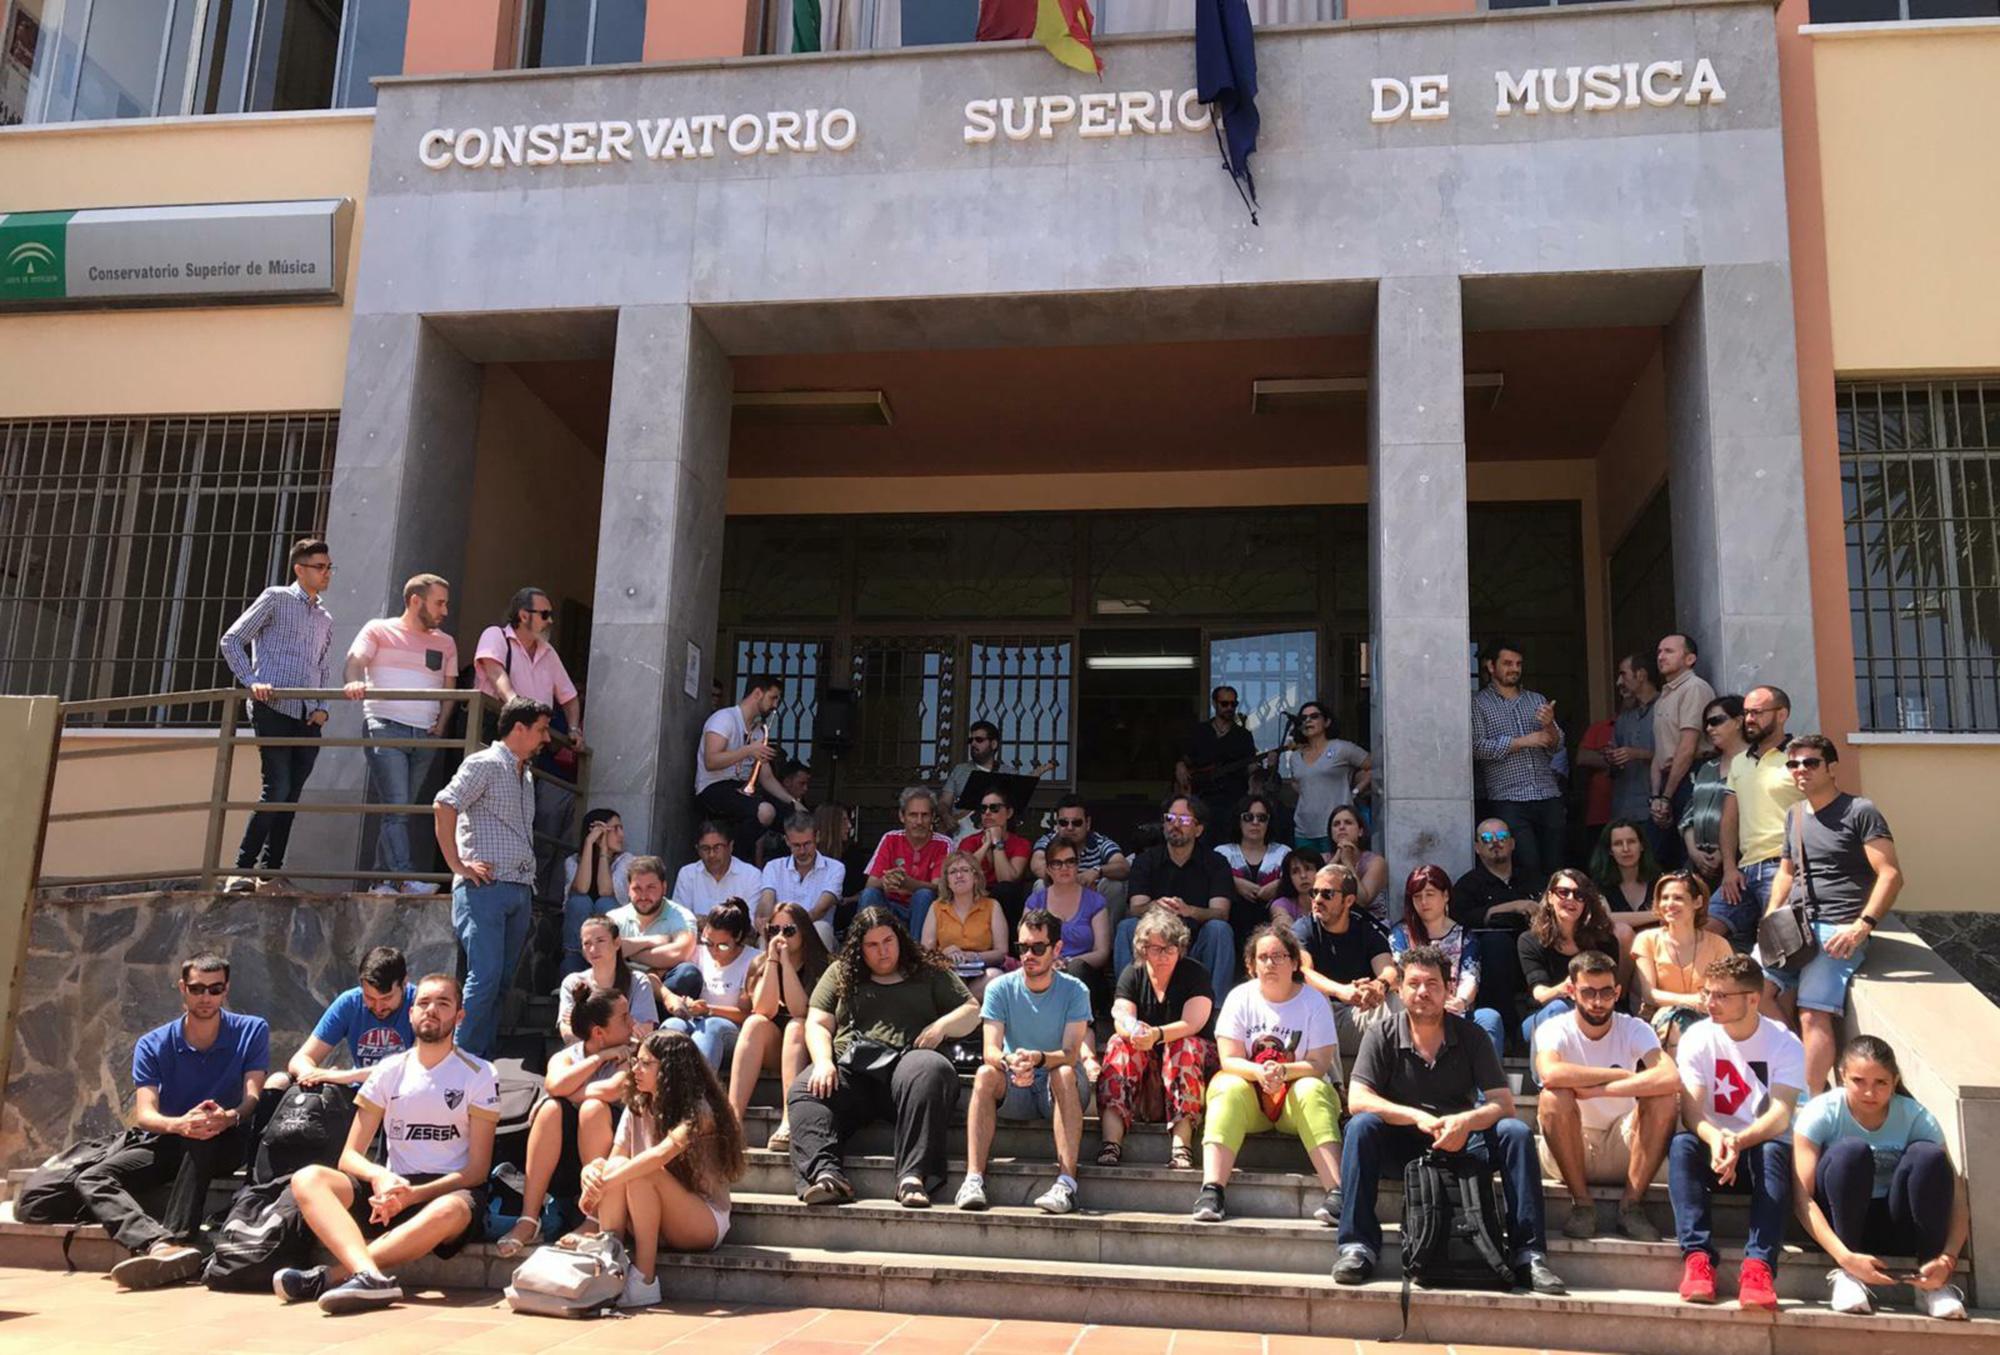 Concentración Conservatorio Superior de Málaga junio 2019